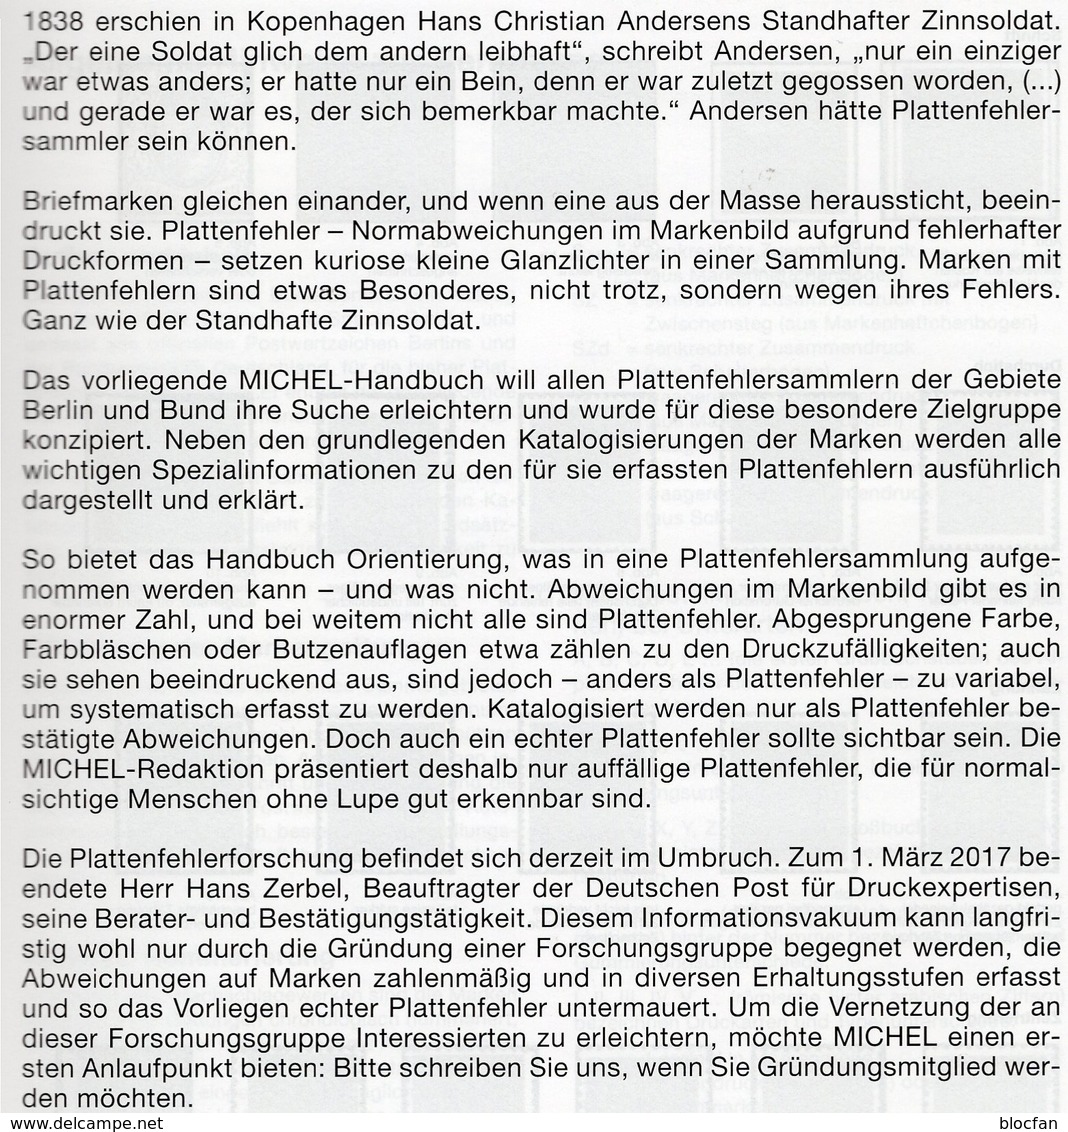 Erstauflage MICHEL Plattenfehler BUND Berlin 2018 40€ Katalog Fehler Auf Briefmarken Error Stamps Catalogue Germany - Filatelie